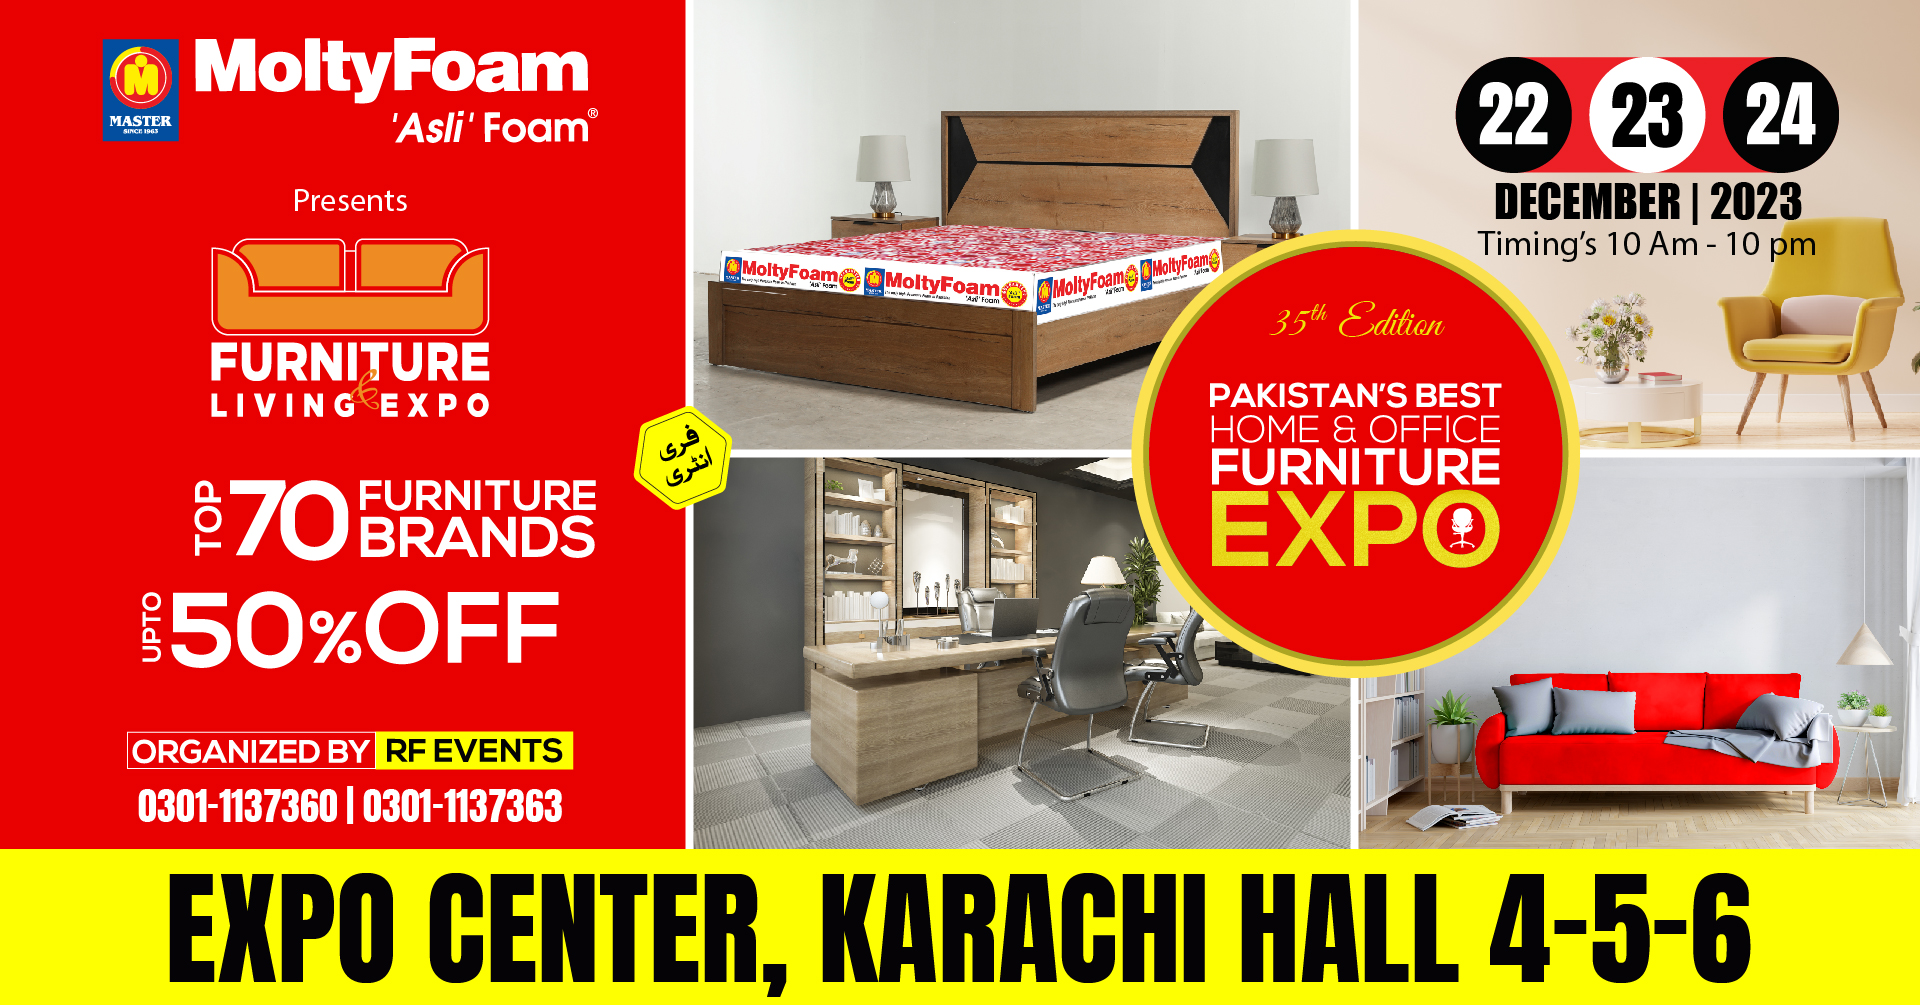 Karachi Furniture and Living Expo 22-23-24 Dec 2023 at Expo Center, Karachi, Sindh, Pakistan